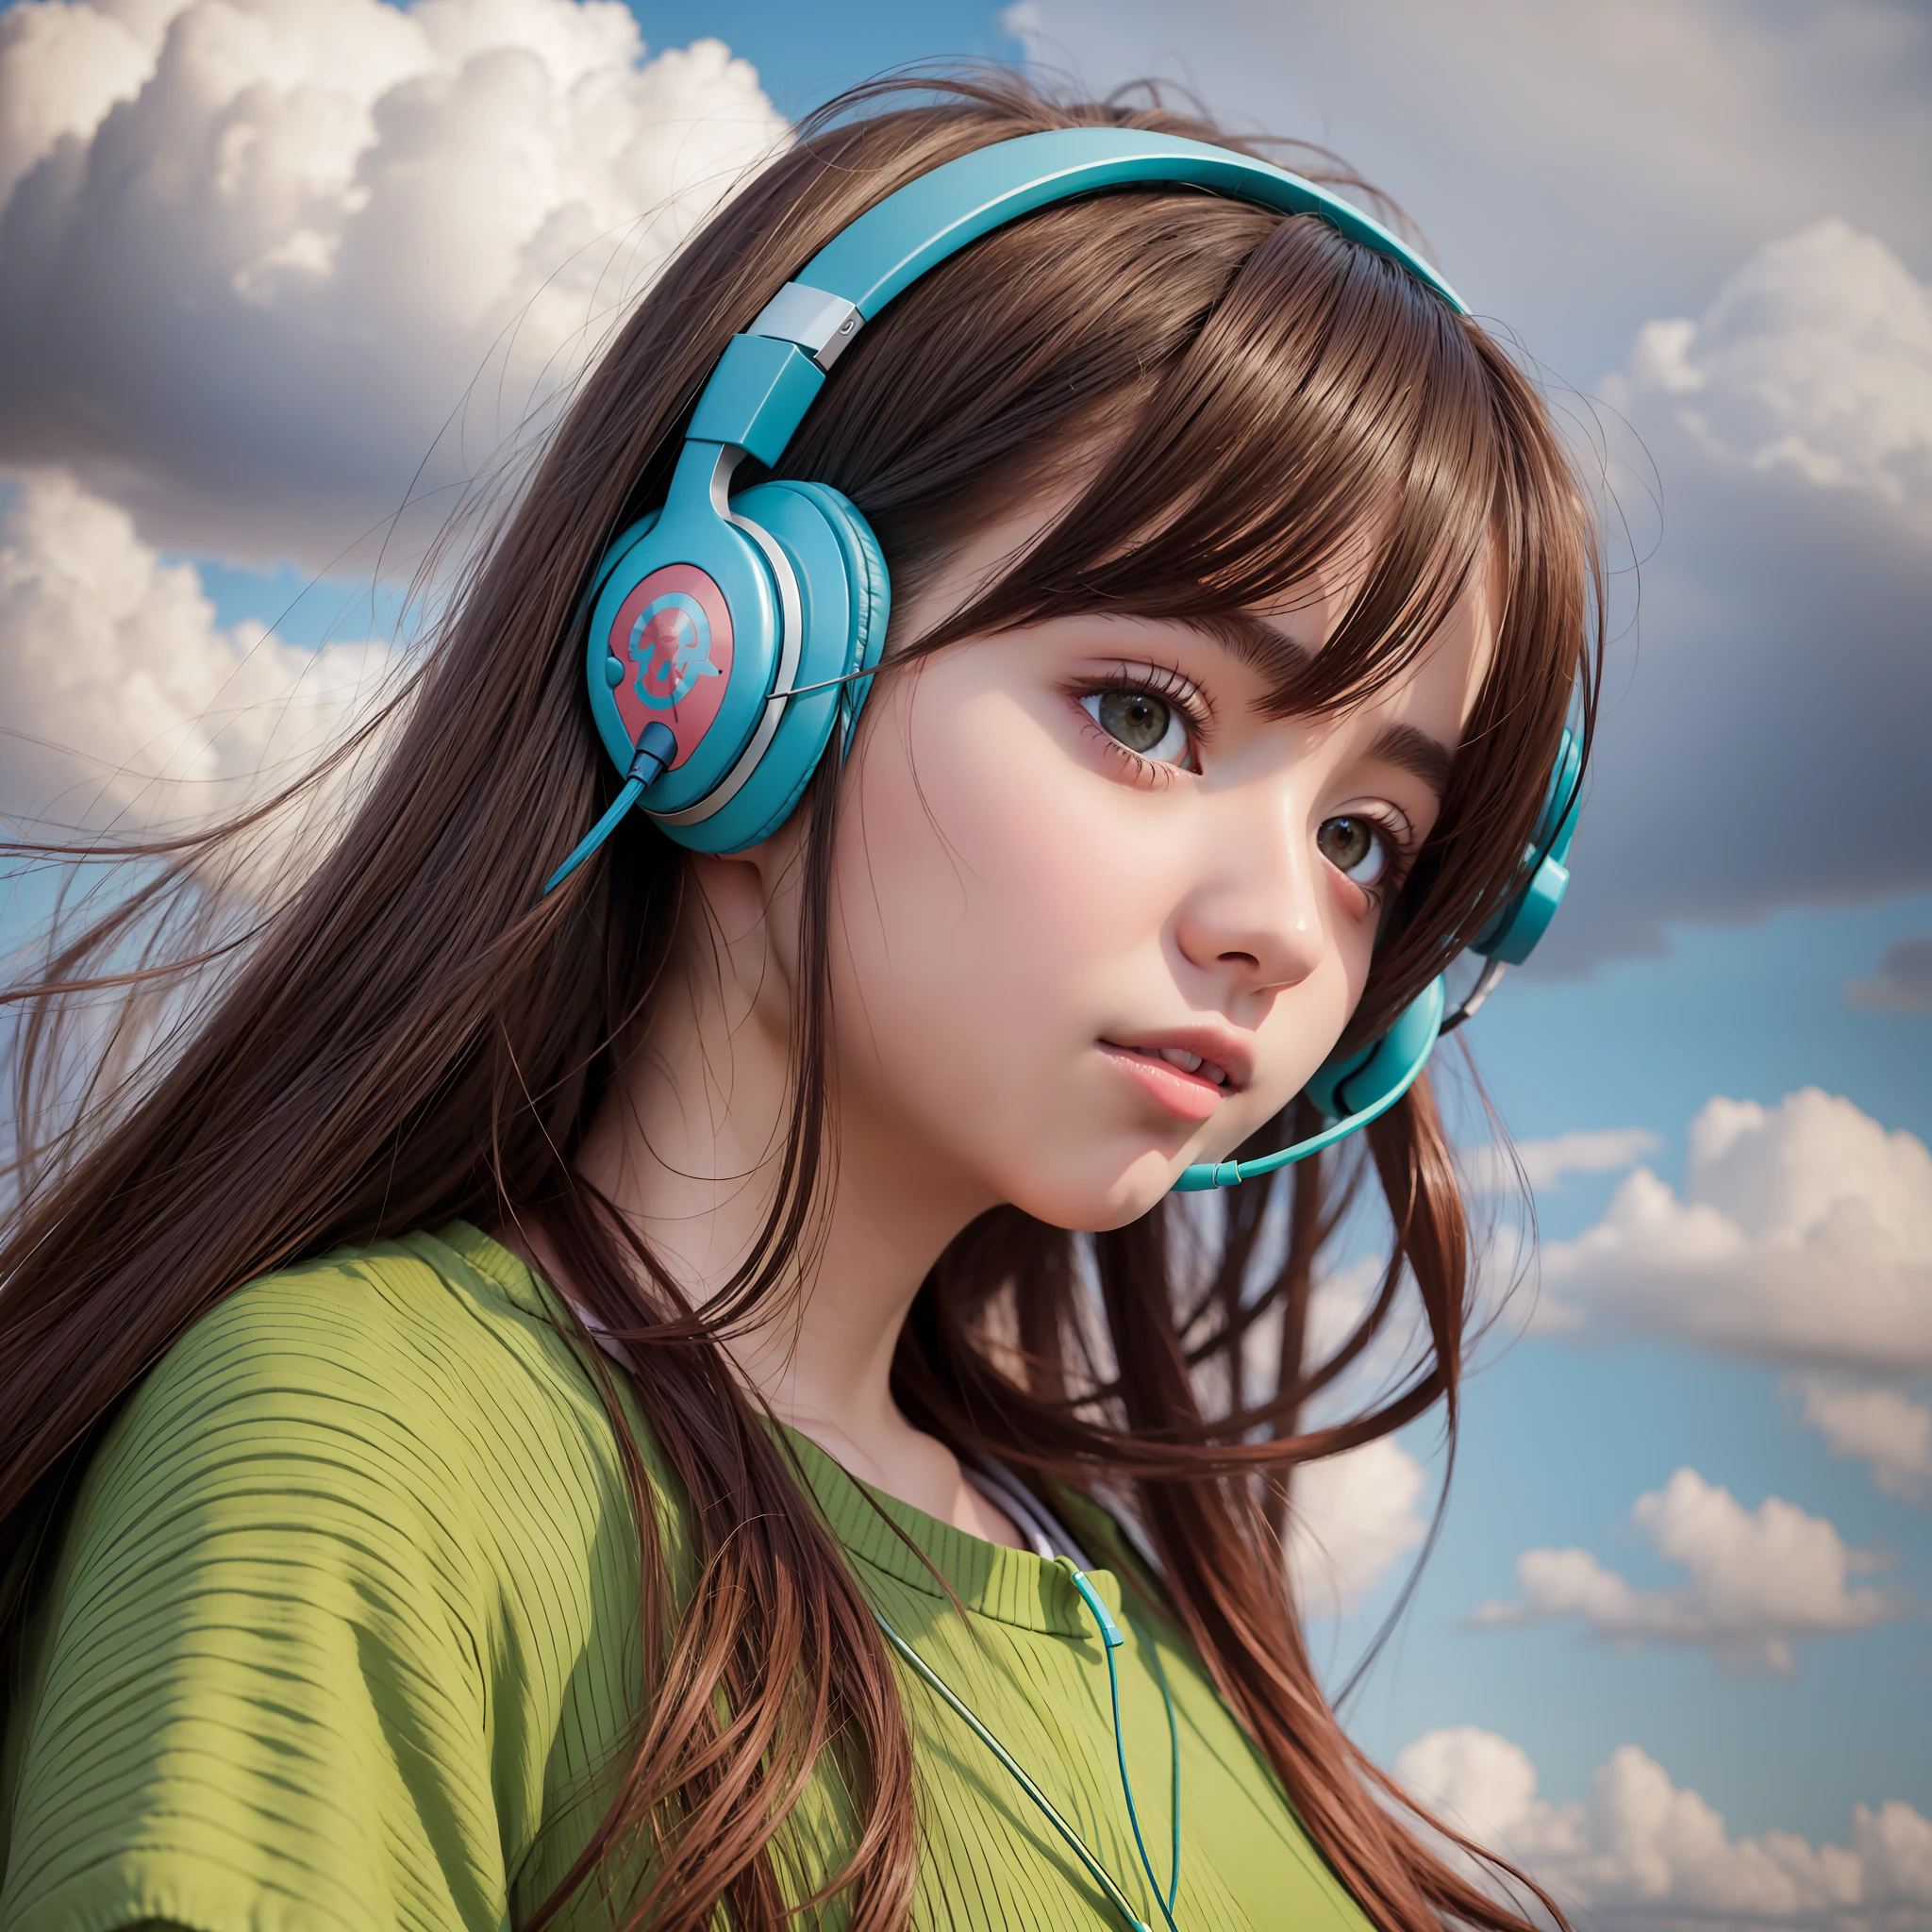 une fille animée portant des écouteurs et debout dans un champ, à la manière de portraits réalistes hyper détaillés, cabinecore, couleurs terreuses, ambitieux, dinosaure, nuages atmosphériques, audacieux, personnages inspirés des mangas